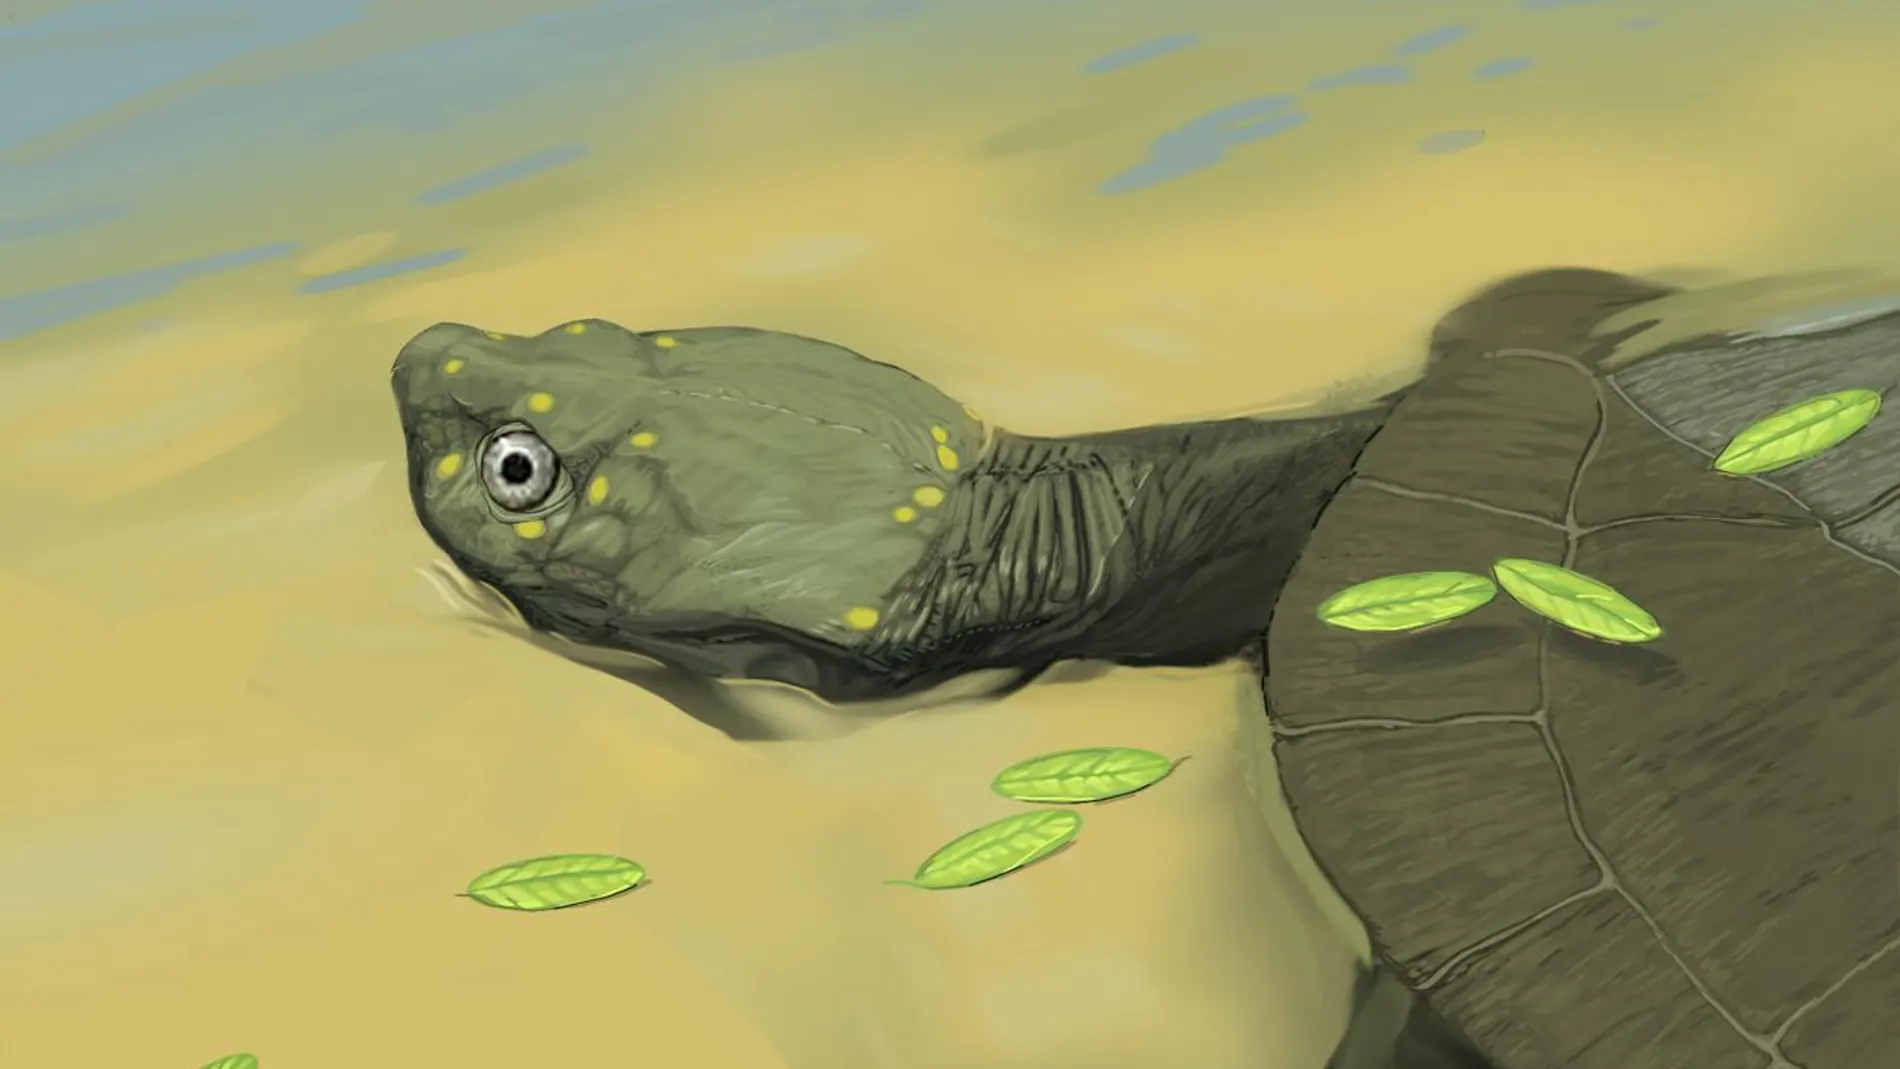 Reconstrucción de una nueva especie de tortuga del cretácico, Pleurochayah appalachius (Brent Adrian de la Midwestern University)